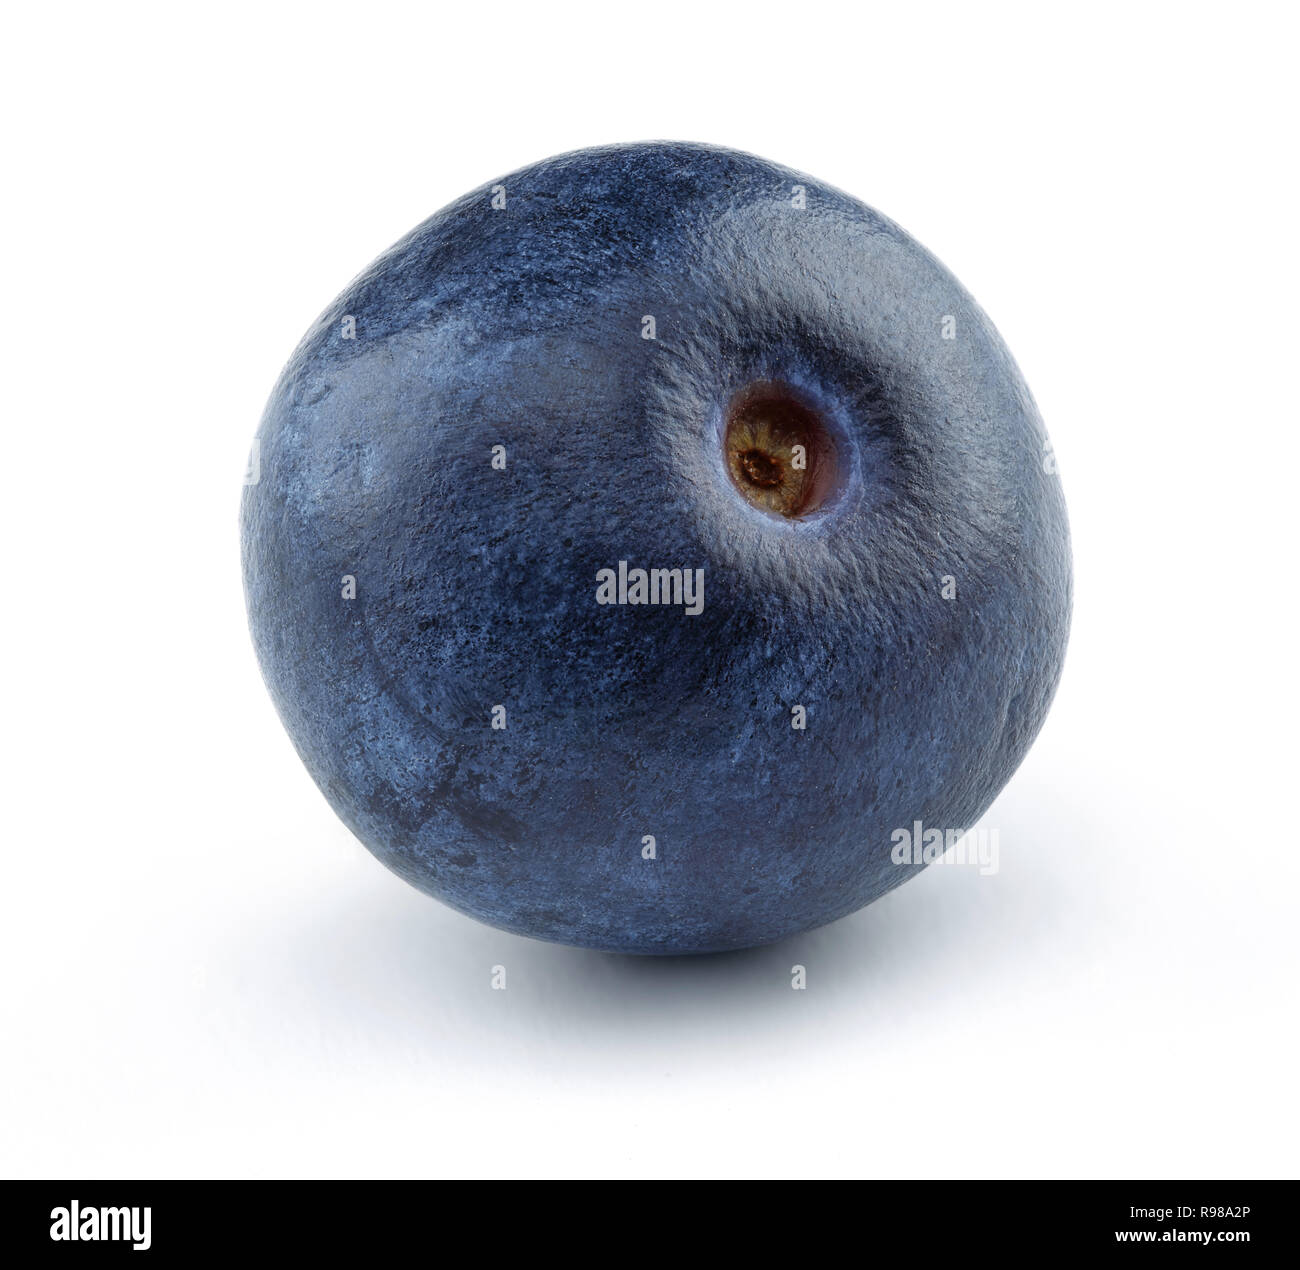 Single blueberry isolated on white background. Macro, studio shot Stock Photo